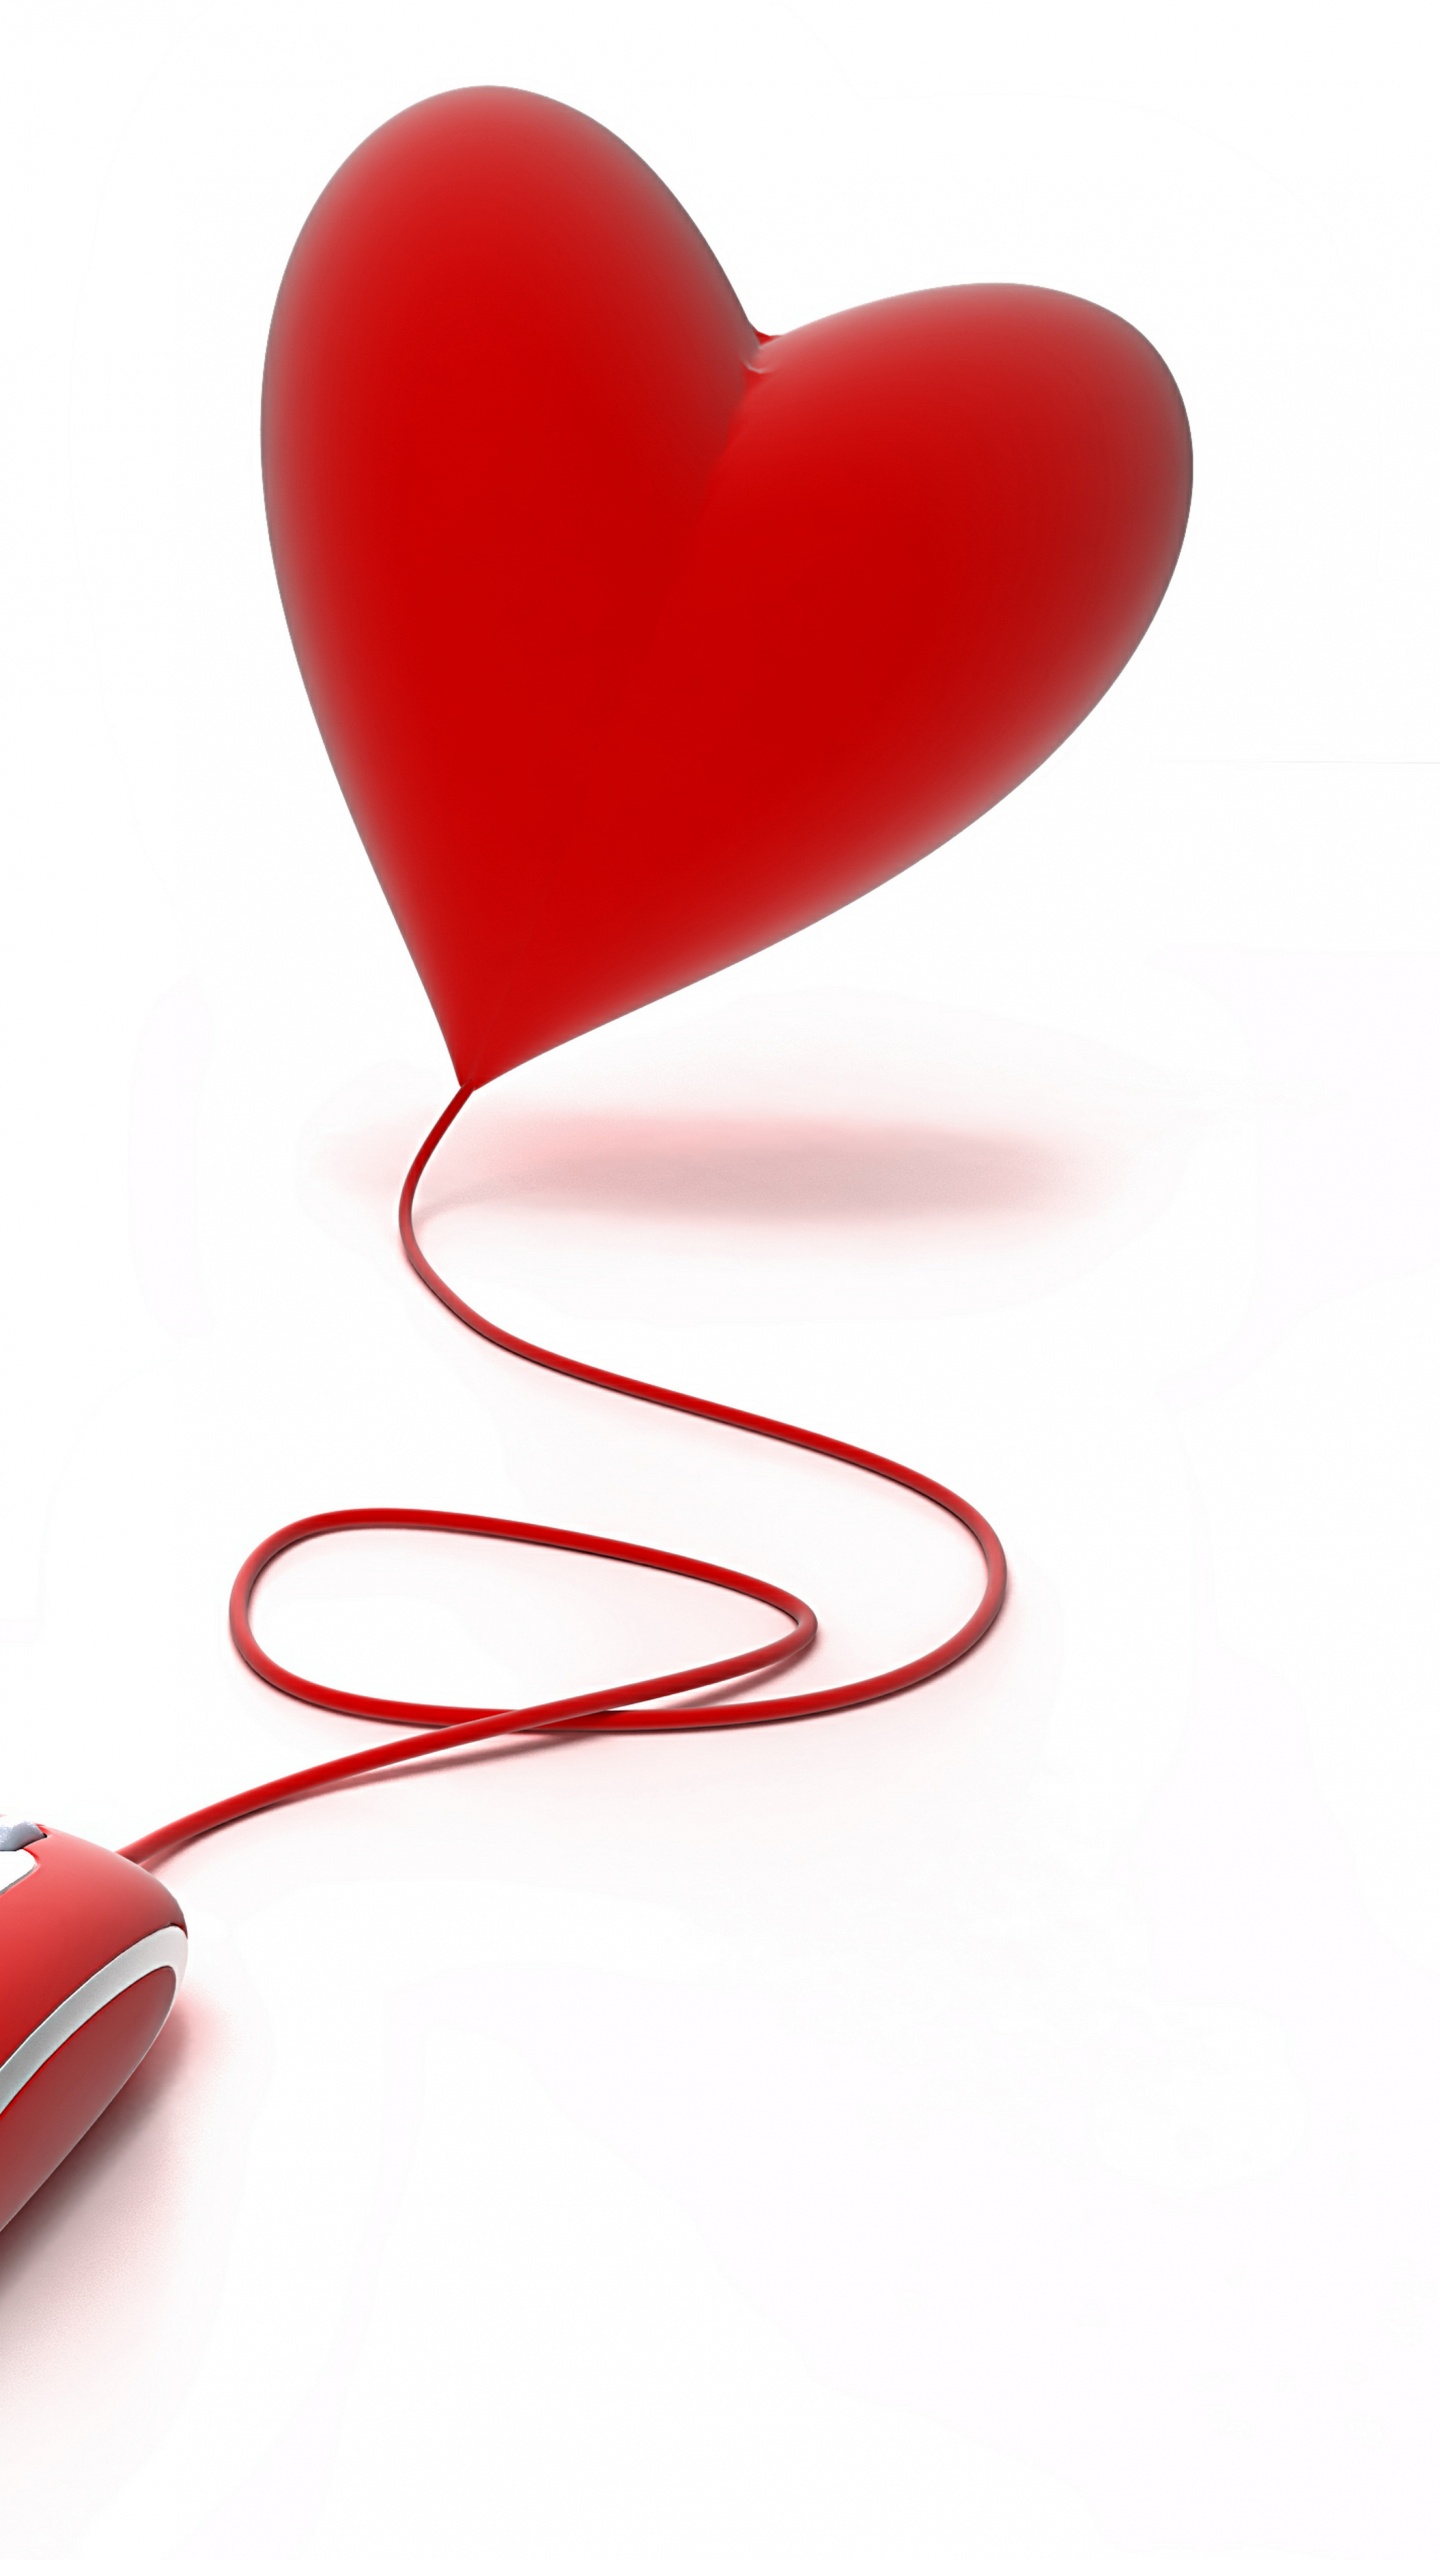 心脏, 红色的, 爱情, 情书, 符号 壁纸 1440x2560 允许